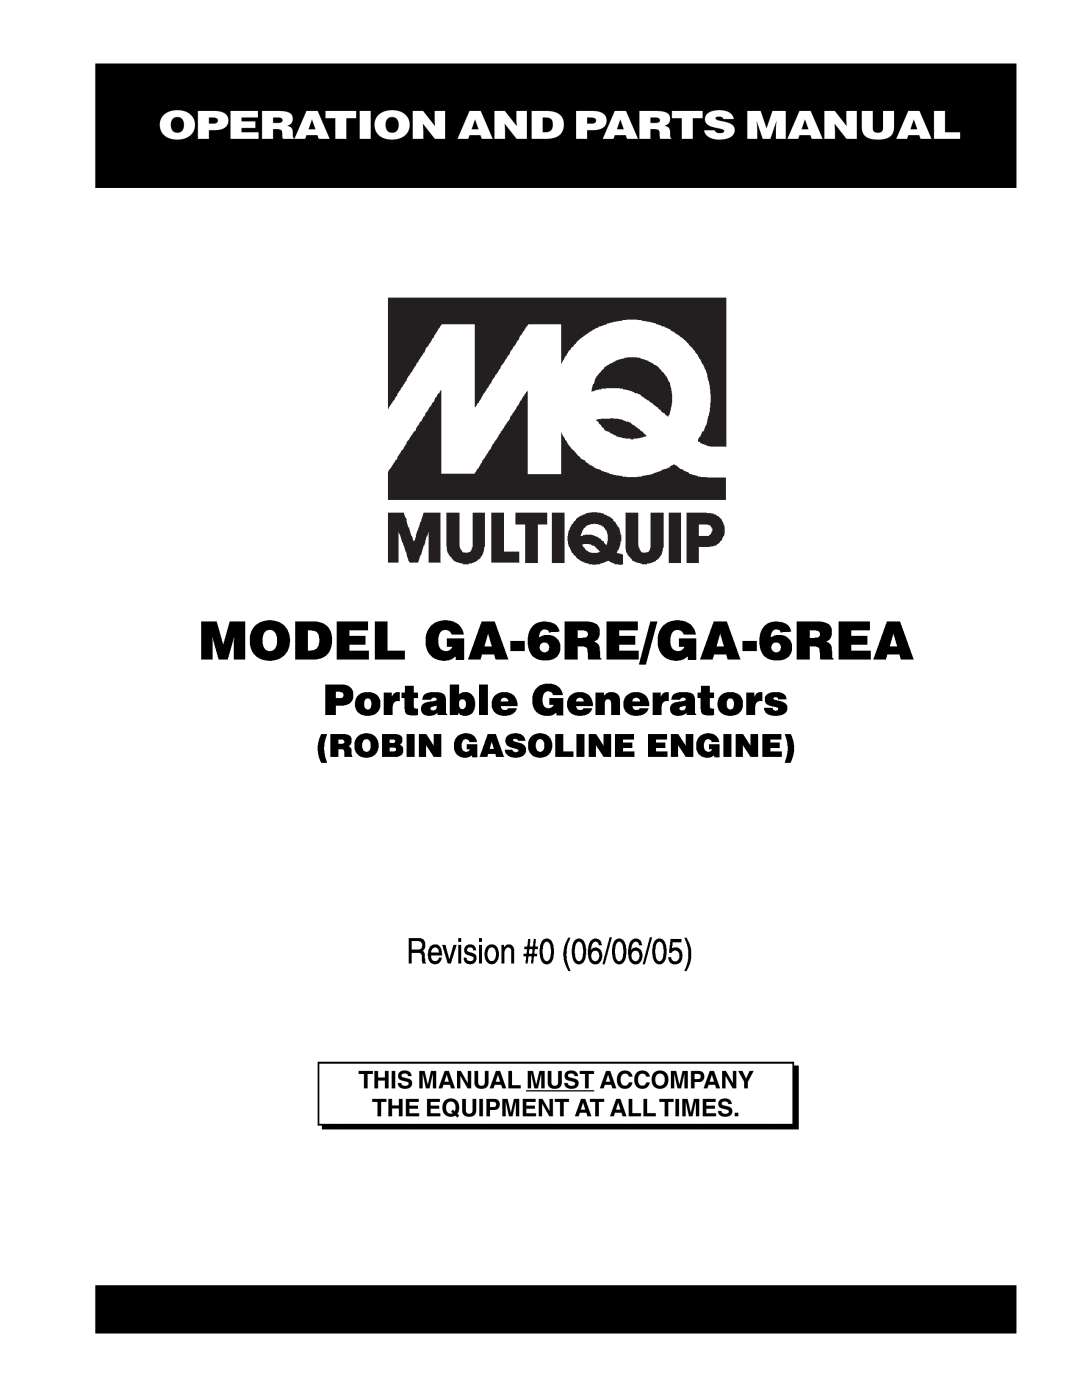 Multiquip manual Operation And Parts Manual, MODEL GA-6RE/GA-6REA, Portable Generators, Revision #0 06/06/05 